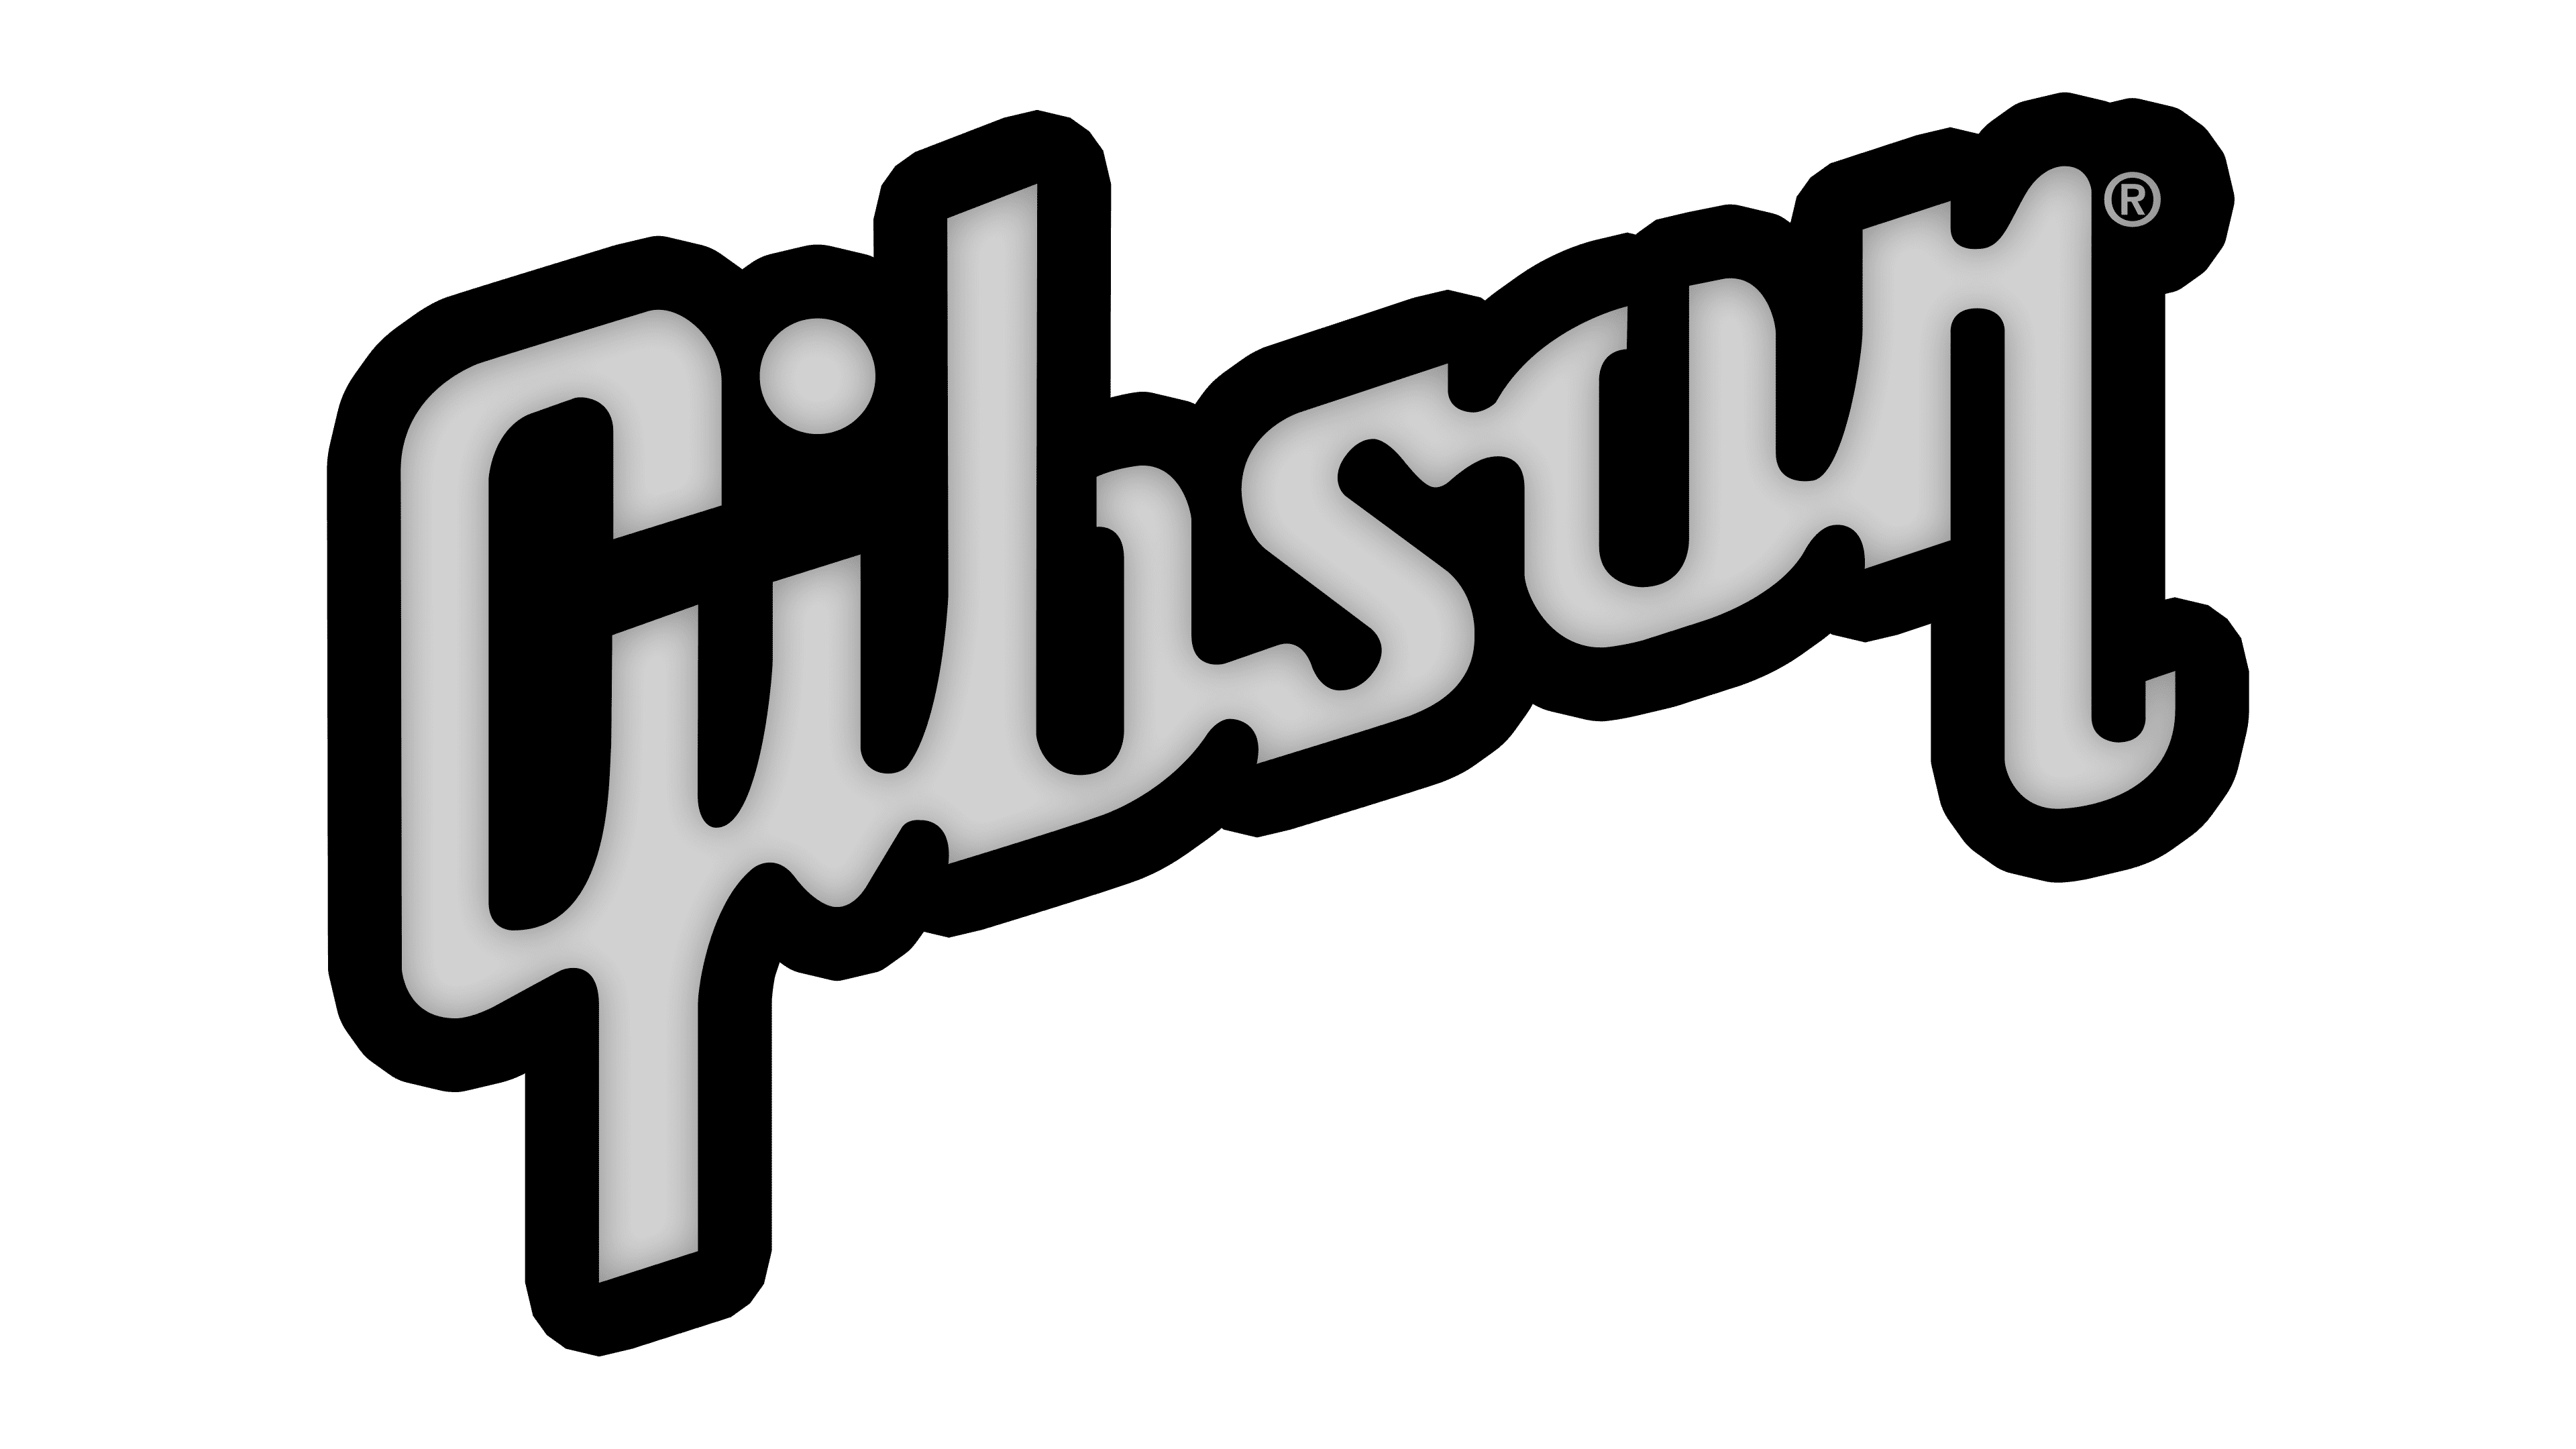 Gibson Logos | tyello.com